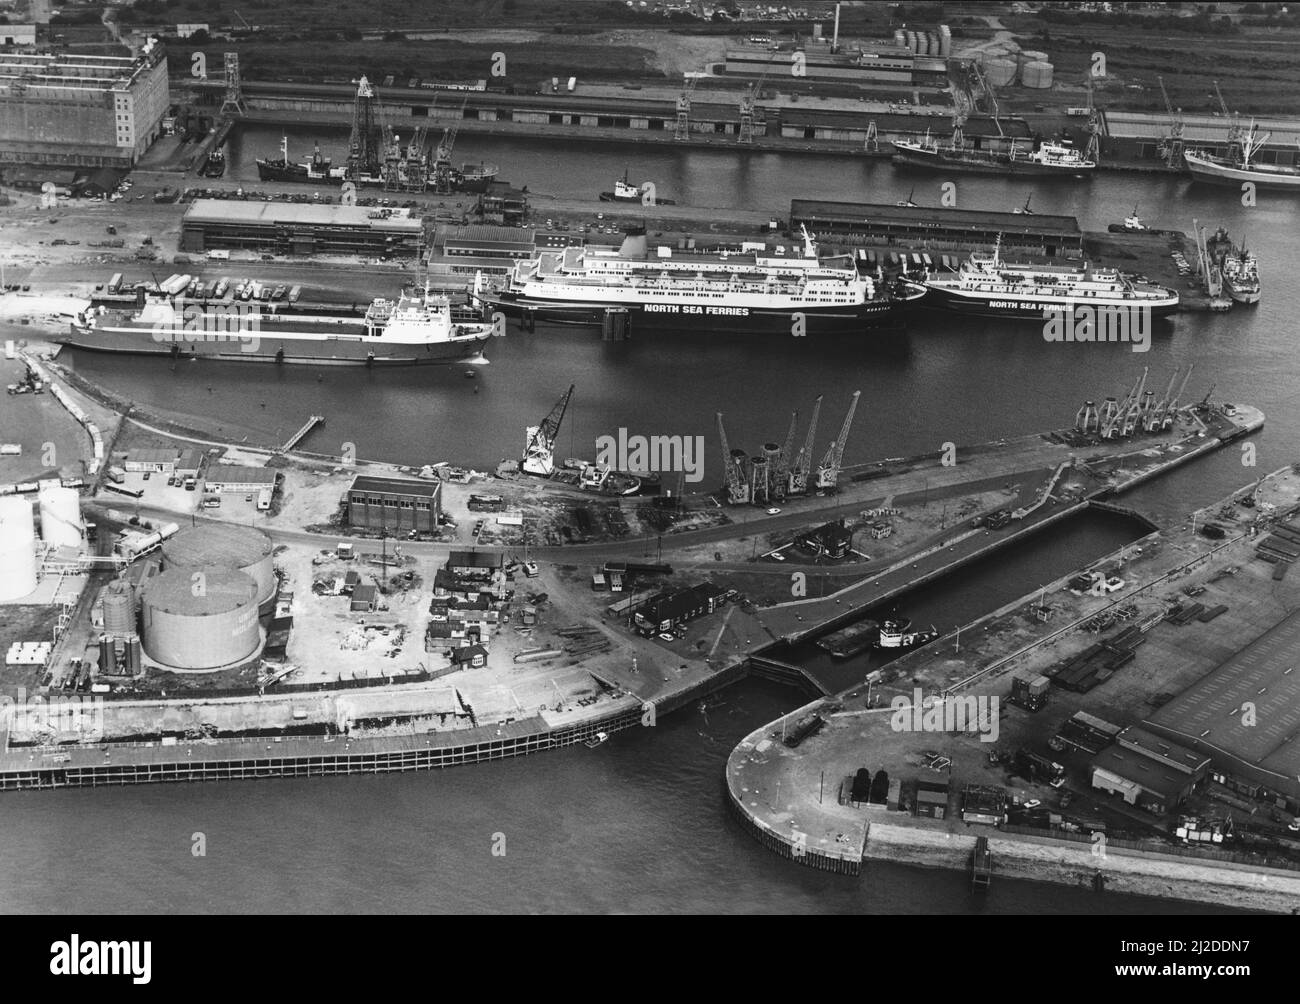 Vista aerea di King George e Queen Elizabeth Docks, Hull. Al centro della foto si trova la nave North Sea Ferries, la Norstar ormeggiata accanto al terminal dei traghetti. Circa 1985 Foto Stock